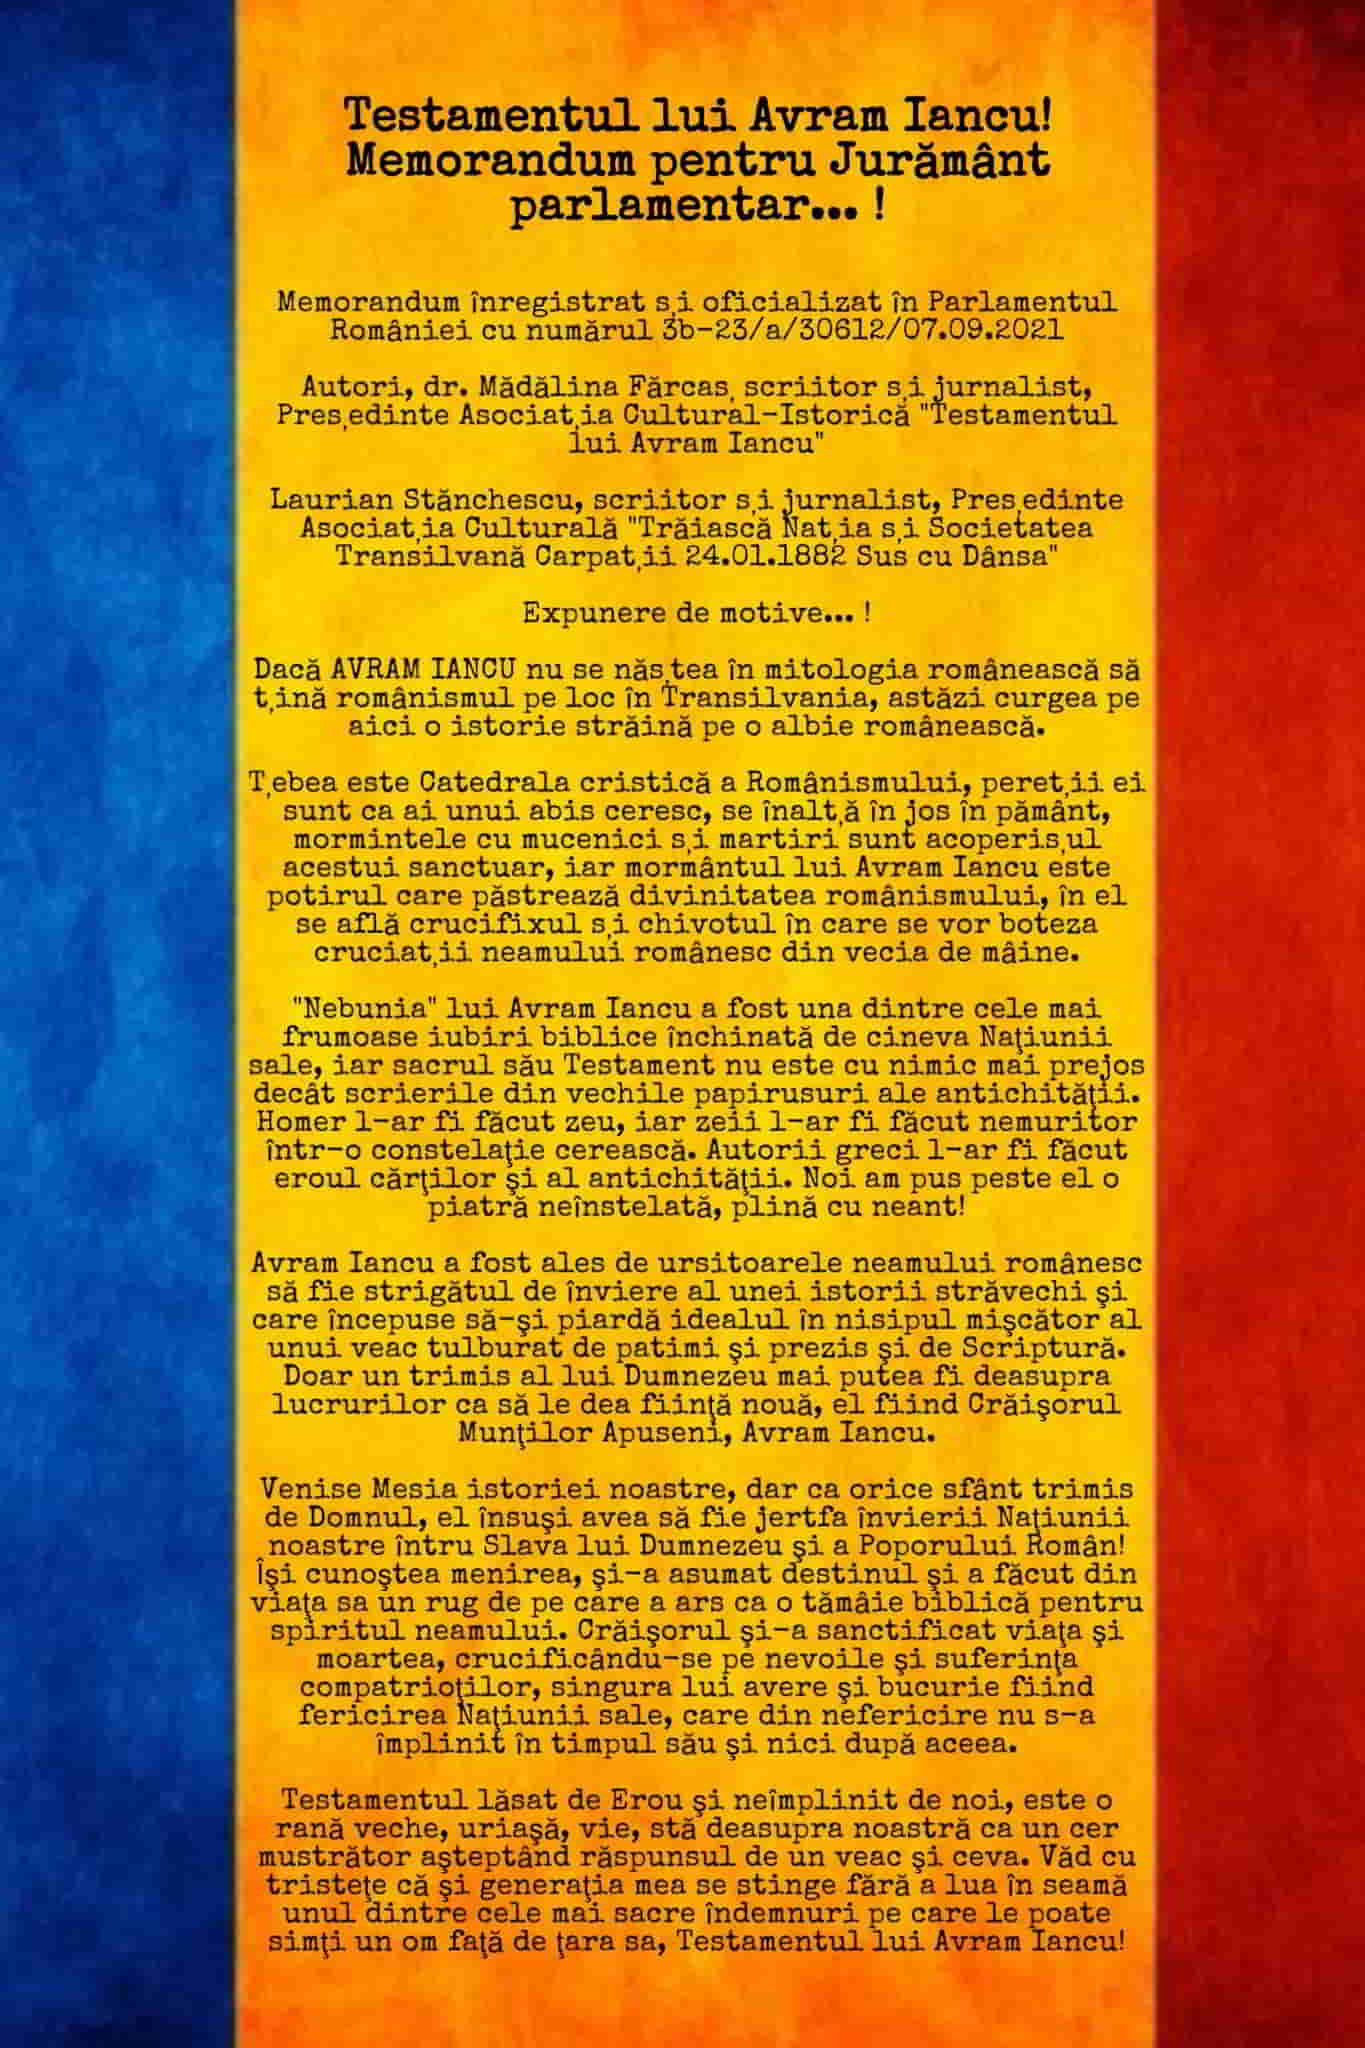 Luni, 4 octombrie 2021, se depune în Parlamentul României "Testamentul lui  Avram Iancu! Memorandum pentru Jurământ parlamentar… !"